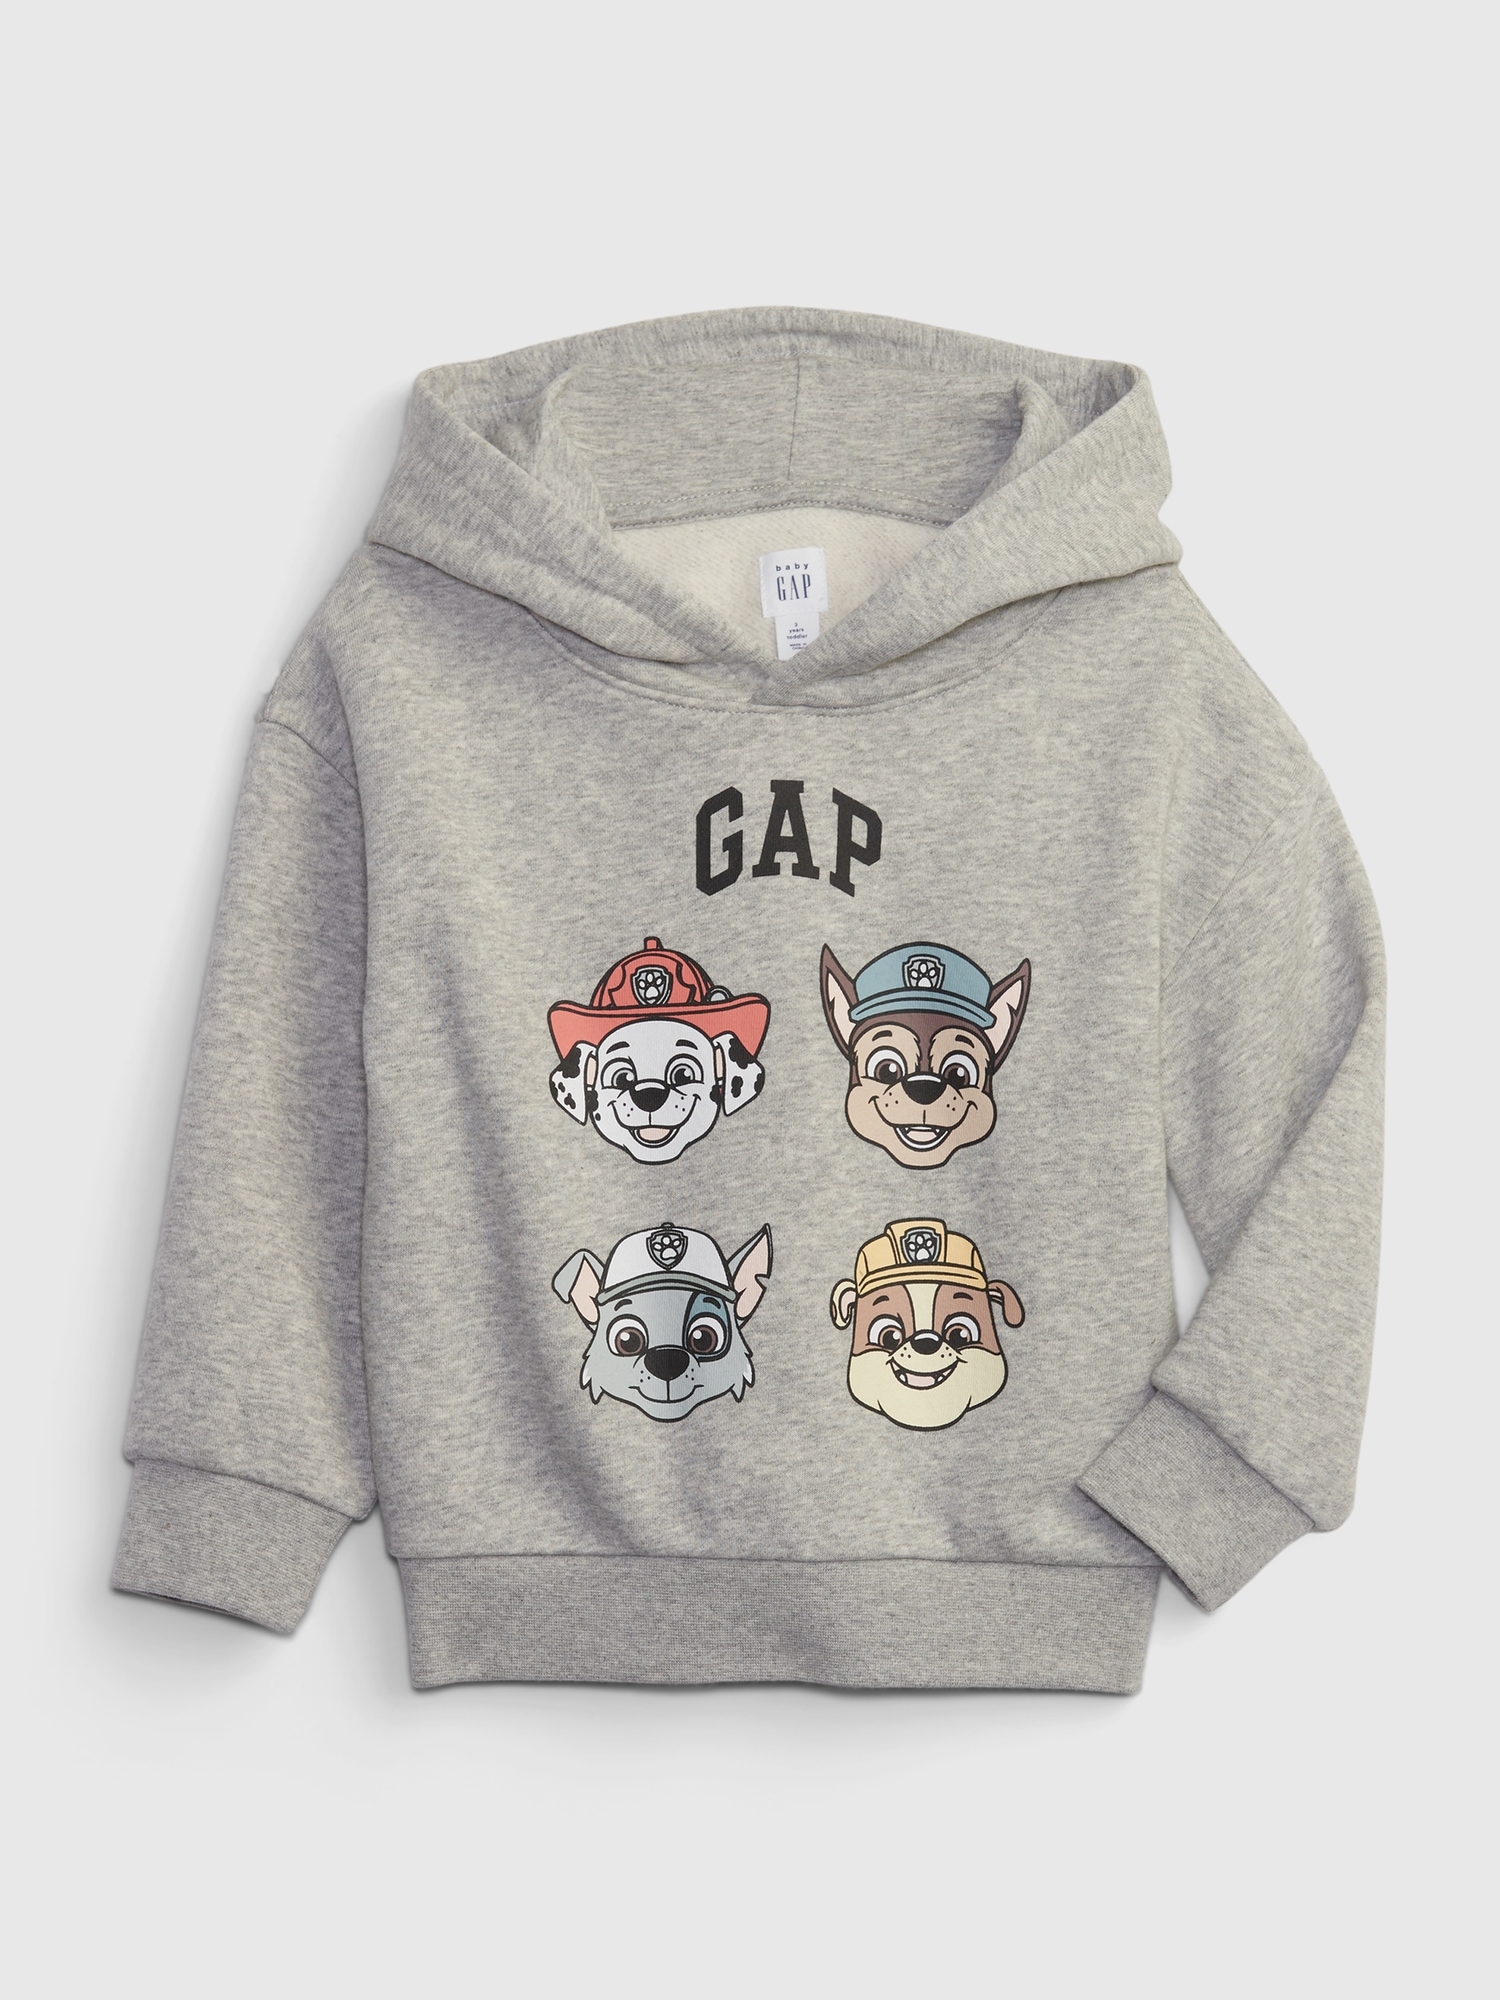 | Gap Patrol Graphic Paw Toddler Sweatshirt